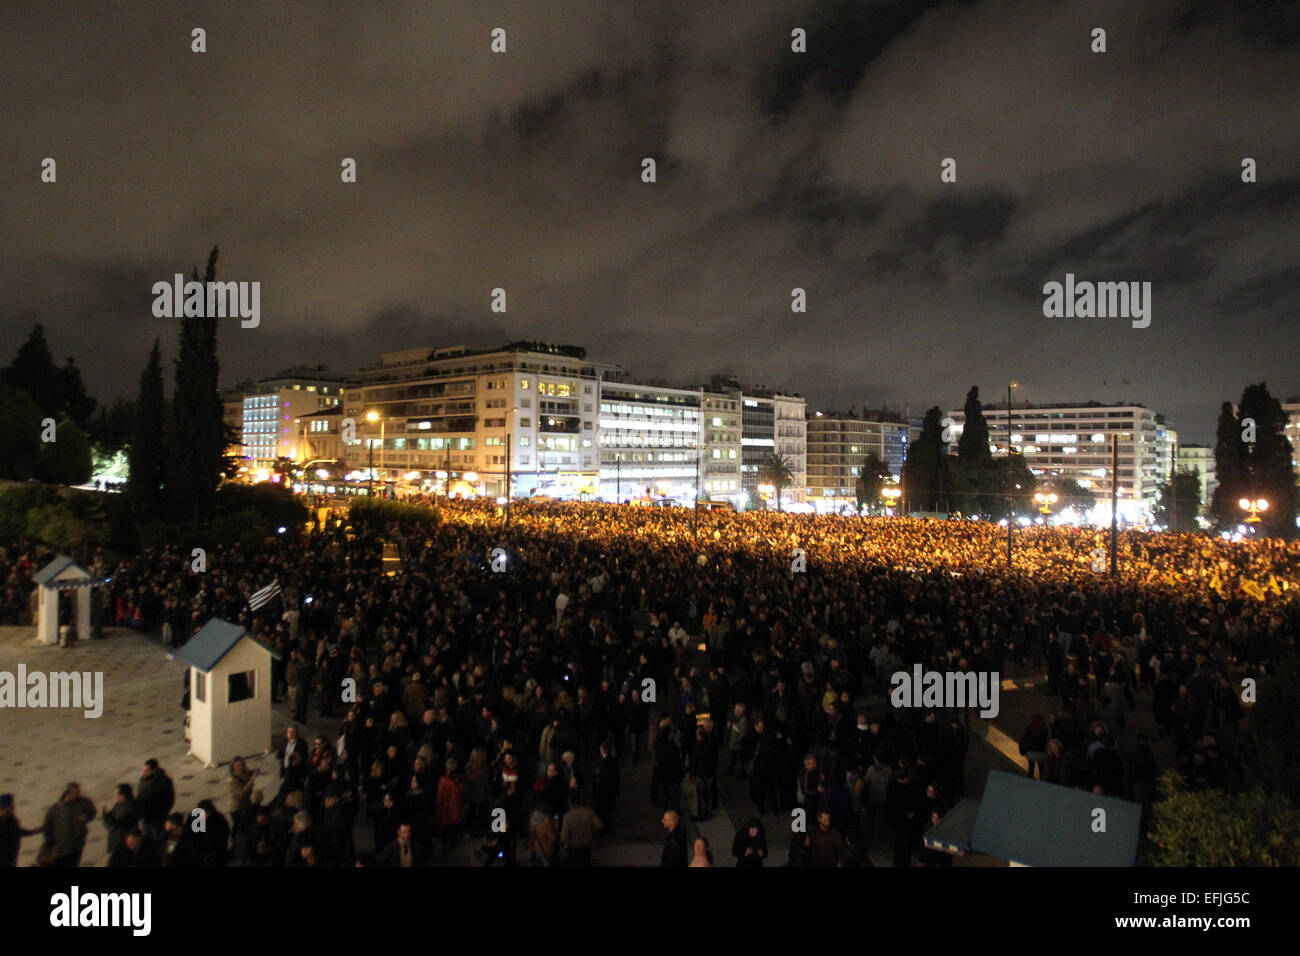 Athen, Griechenland. 5. Februar 2015. Demonstrationen an eine Demonstration gegen Sparpolitik außerhalb des griechischen Parlaments in Athen, am 5. Februar 2015 teilnehmen. Etwa 4.000 Menschen versammelten sich für eine Demonstration gegen Sparpolitik in Athen zentralen Syntagma-Platz am Donnerstag, aber in scharfem Kontrast zu vorherigen gewaltsame Proteste gab es keine Barrikaden und kaum Polizei. Am Donnerstag Protest wurde aufgerufen, um harte Haltung der neuen Regierung mit der EU zu unterstützen, mit denen es ein Ende, die strenge Haushaltsregeln sucht. © Marios Lolos/Xinhua/Alamy Live-Nachrichten Stockfoto